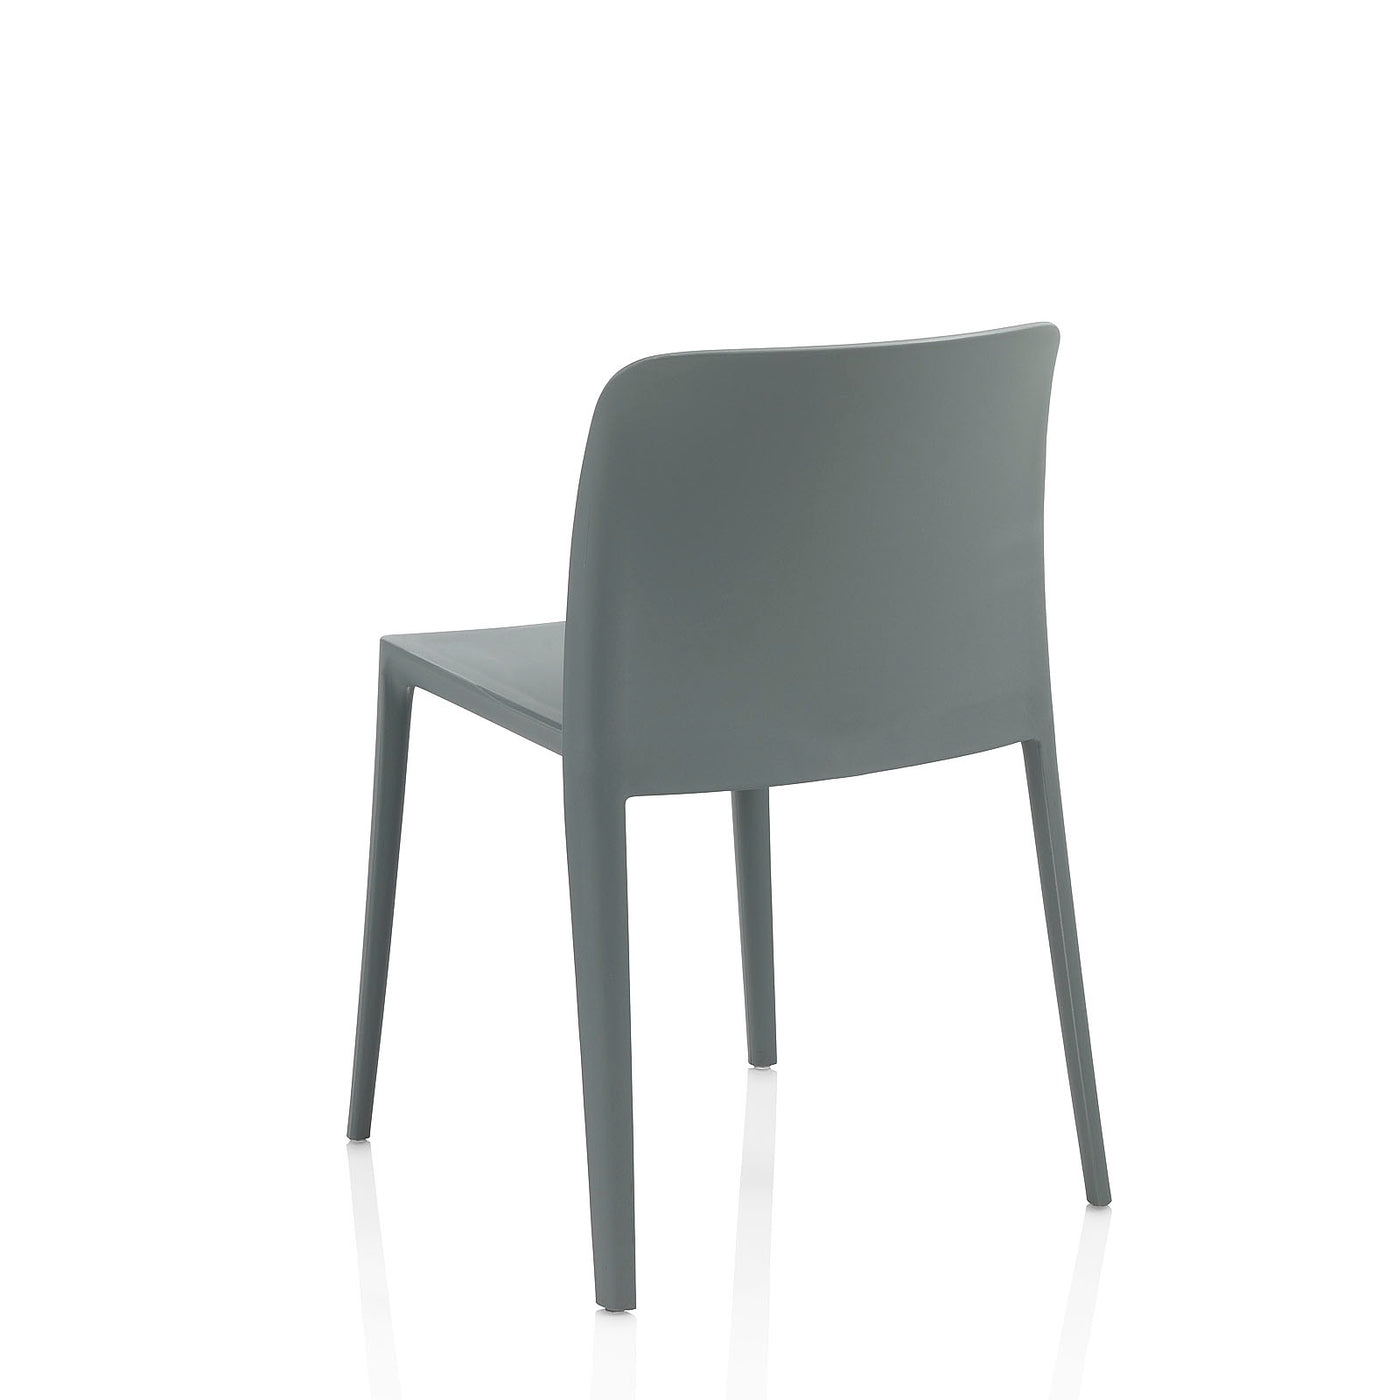 Set of 4 gray SKINNY indoor/outdoor chairs